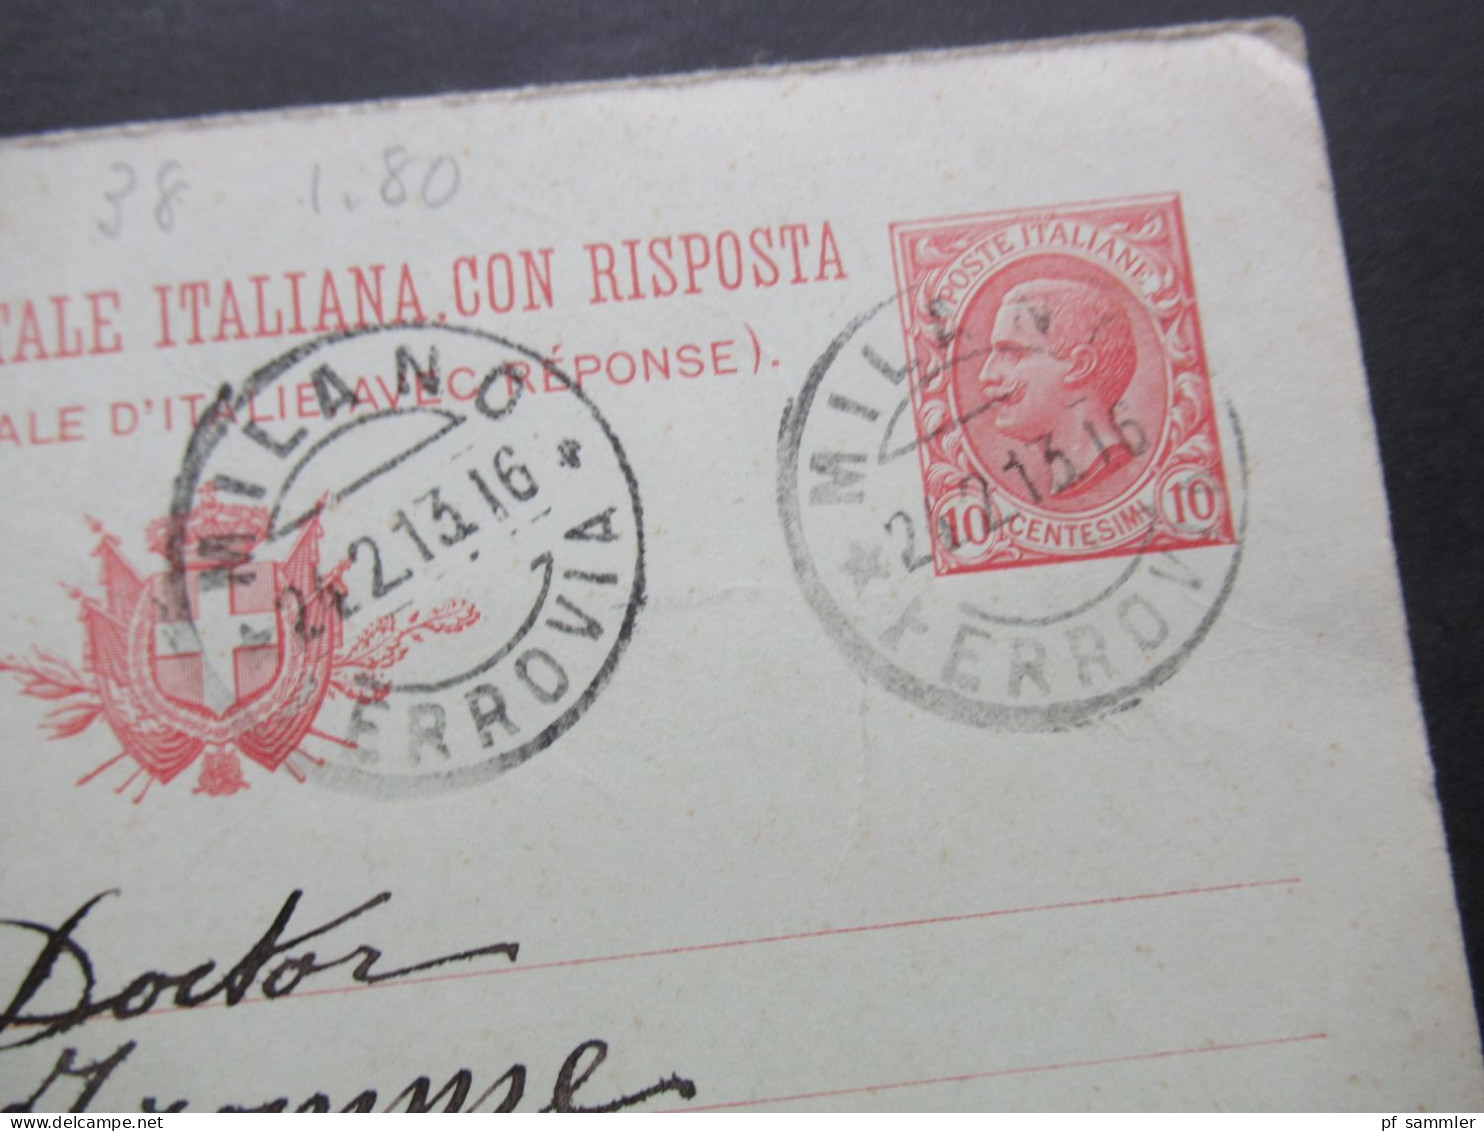 Italien 1913 Ganzsache / Doppelkarte P 39 Frageteil Gestempelt Milano - Stellingen Bez. Hamburg / Auslandsverwendung - Entiers Postaux